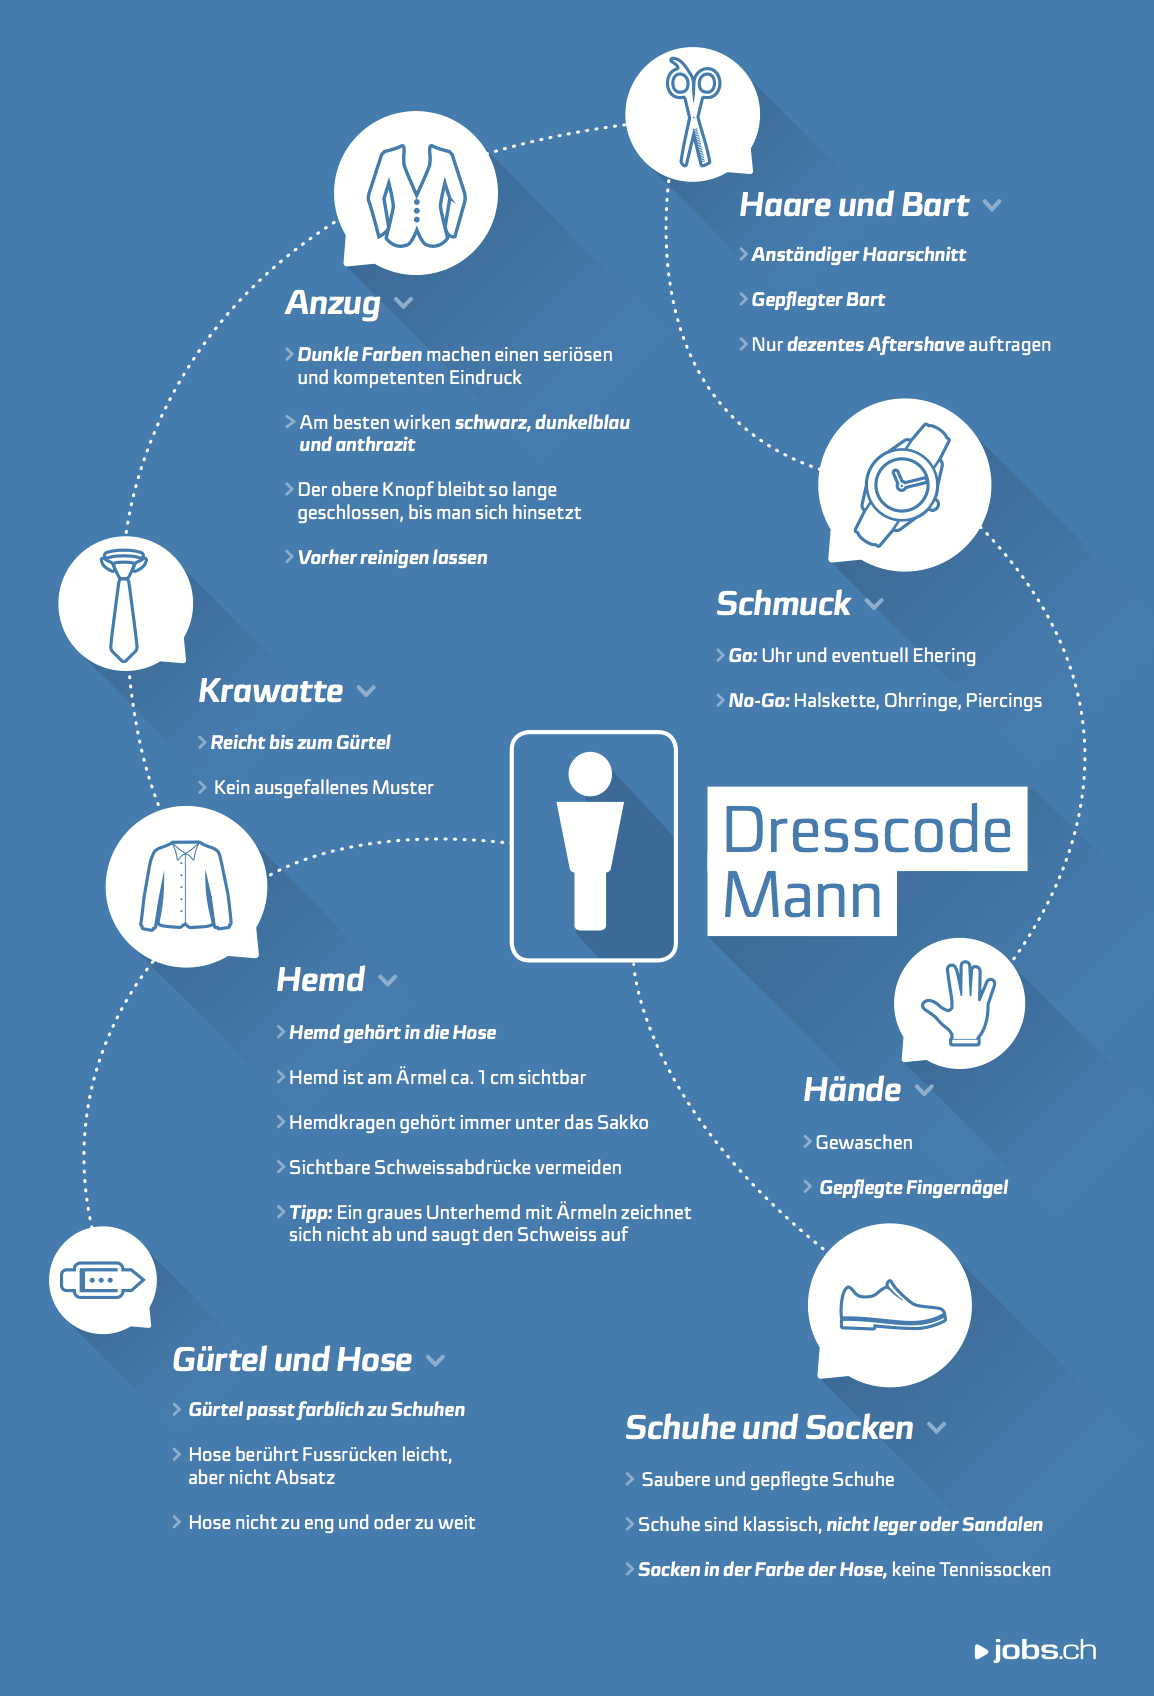 Dresscode-Tipps für Männer beim Bewerbungsgespräch